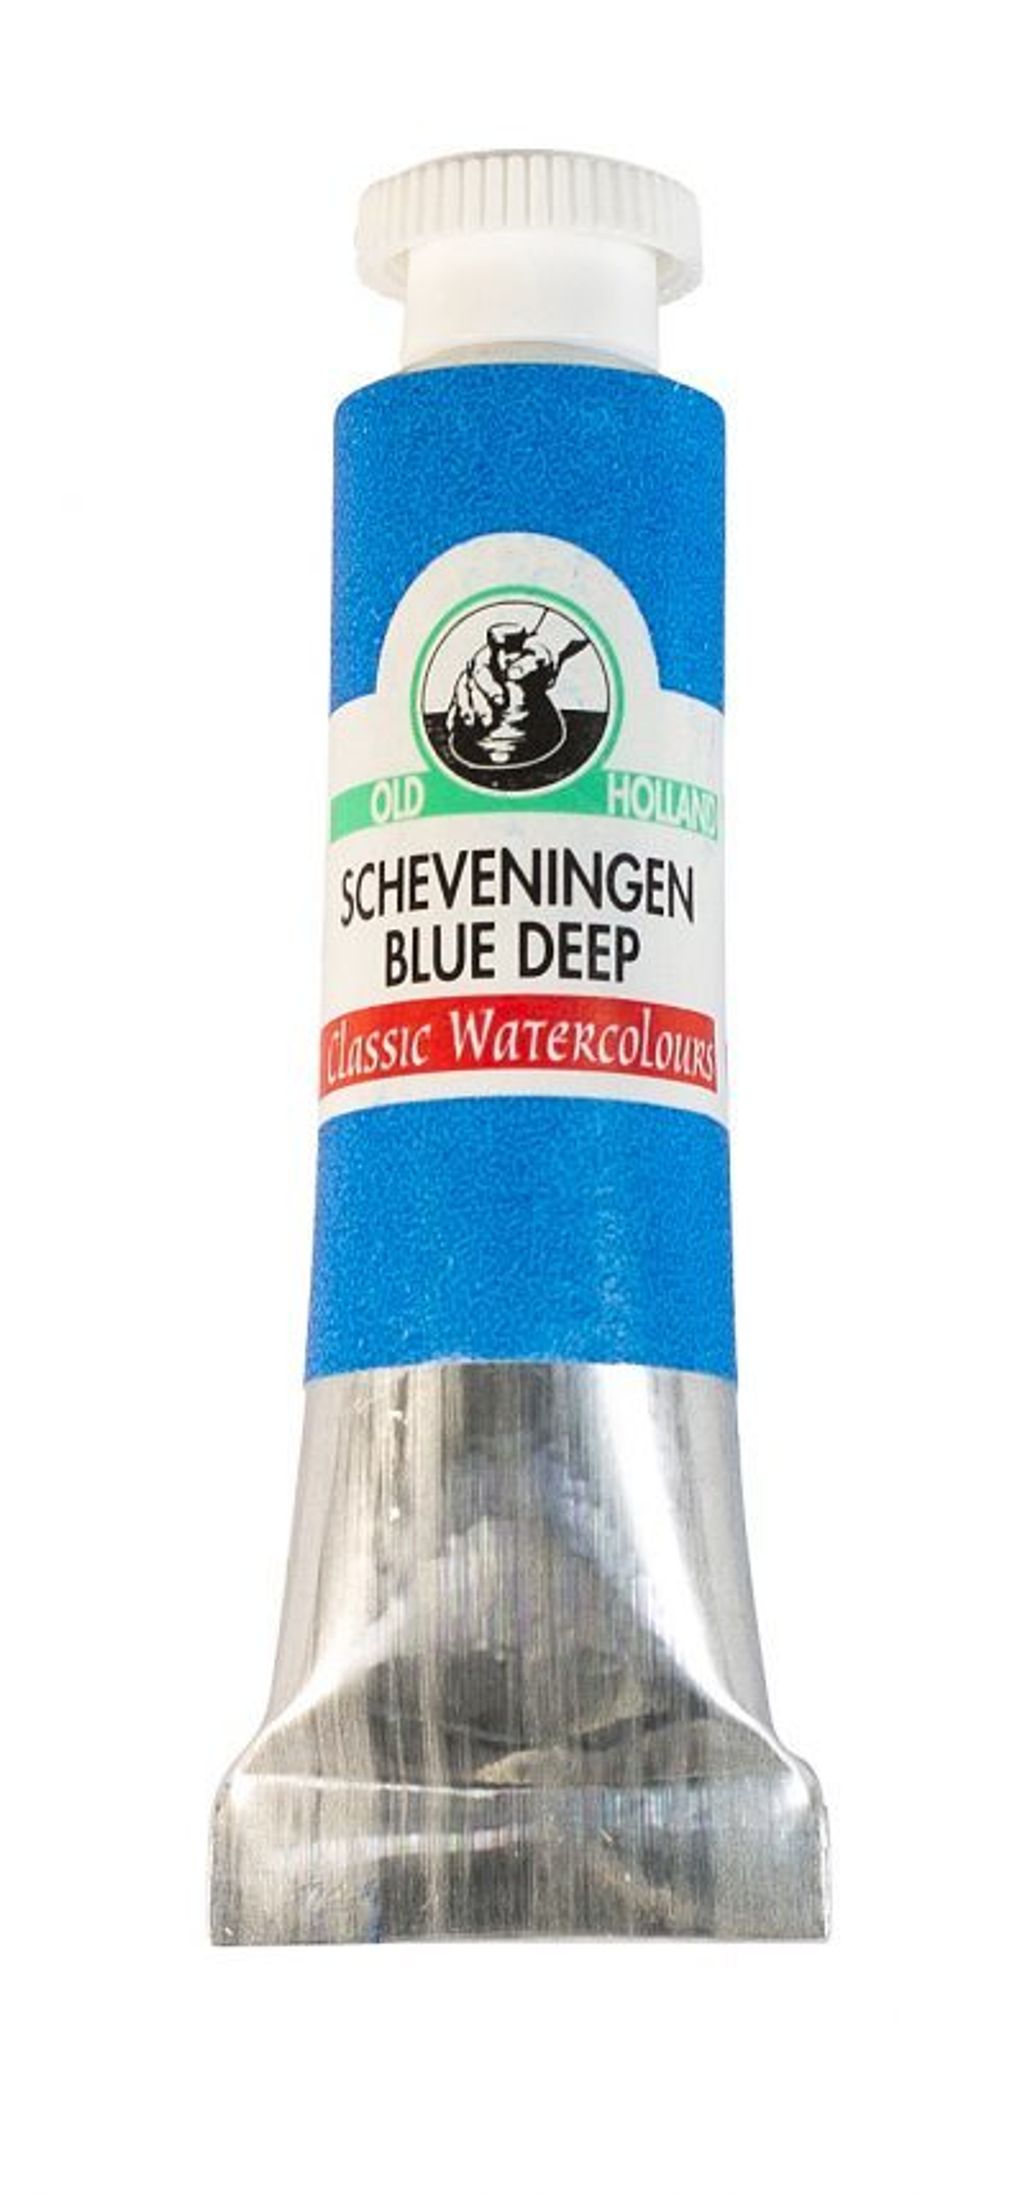 B226_Scheveningen_Blue_Deep-400x857.jpg